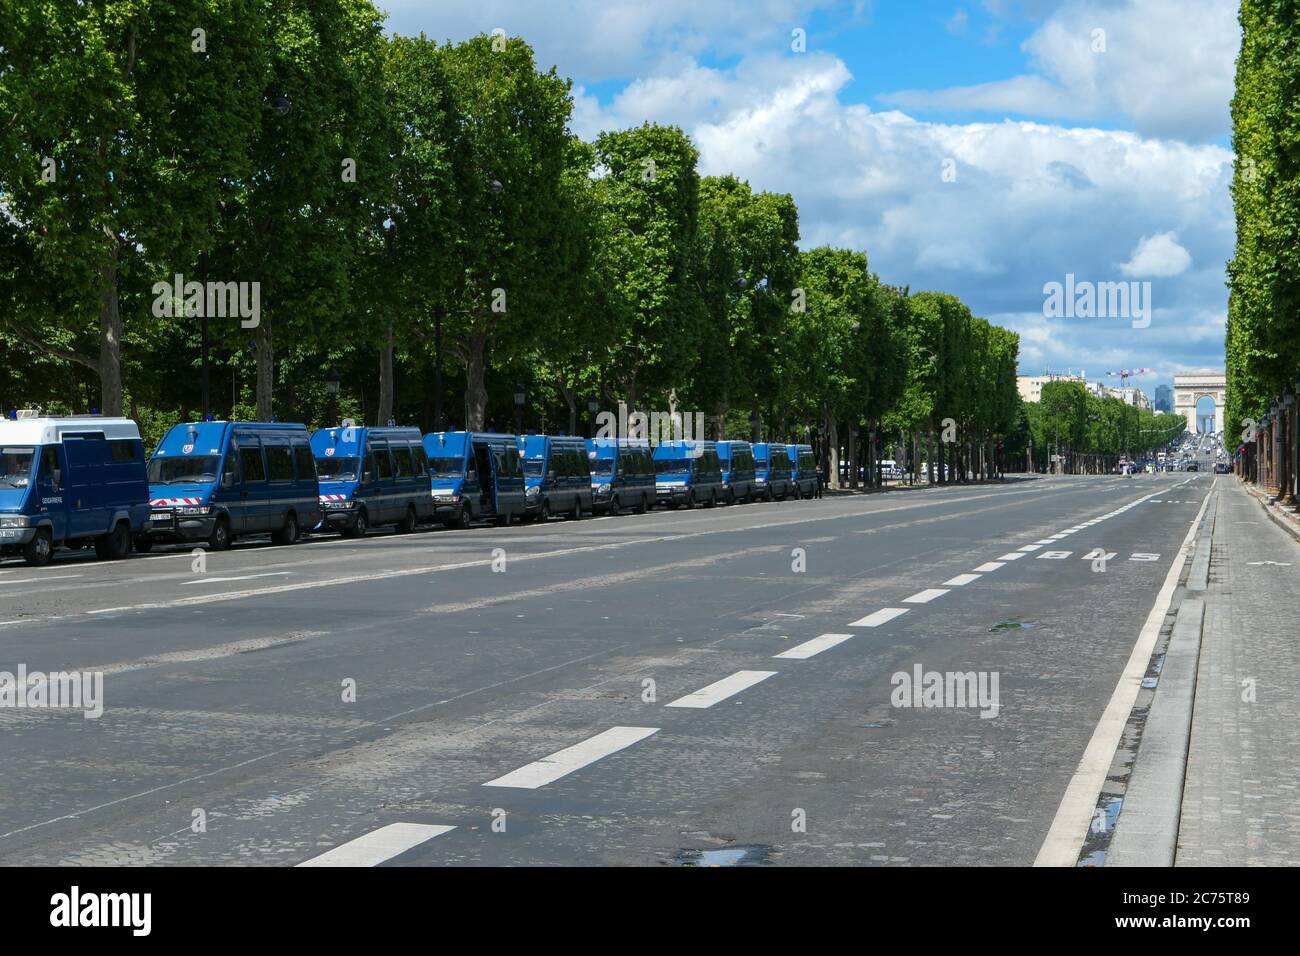 Paris 06 Juni 2020 Fahrzeuge des Gendarms für die Überwachung von touristischen Standorten geparkt. Polizeigruppe und Demonstration in der Nähe historischer Denkmäler. Stockfoto